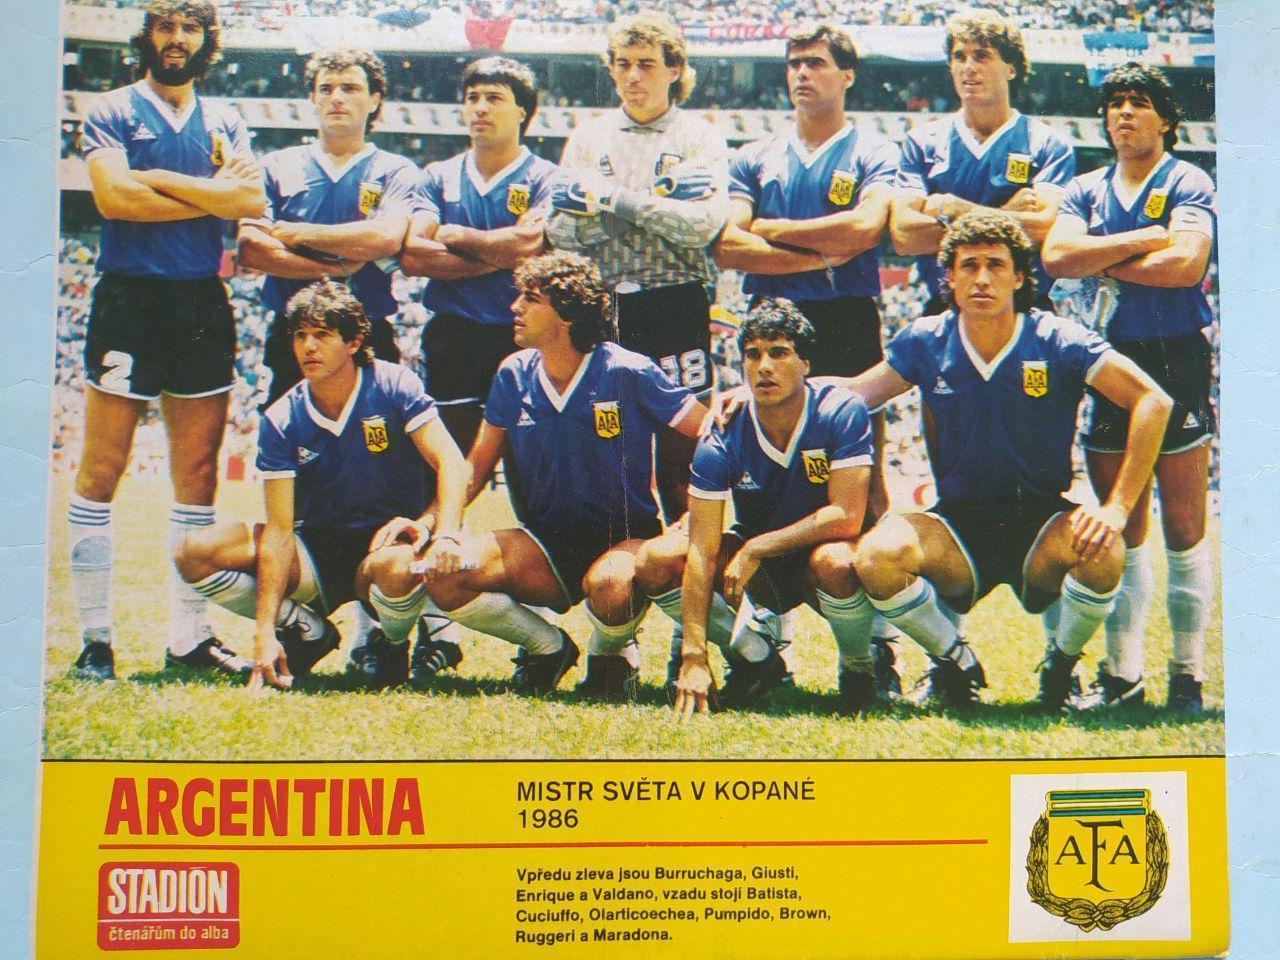 Спецвыпуск Стадион Чехия № 30 за 1986 г. посвящен чм футбол в Мексике 1986 г. 7